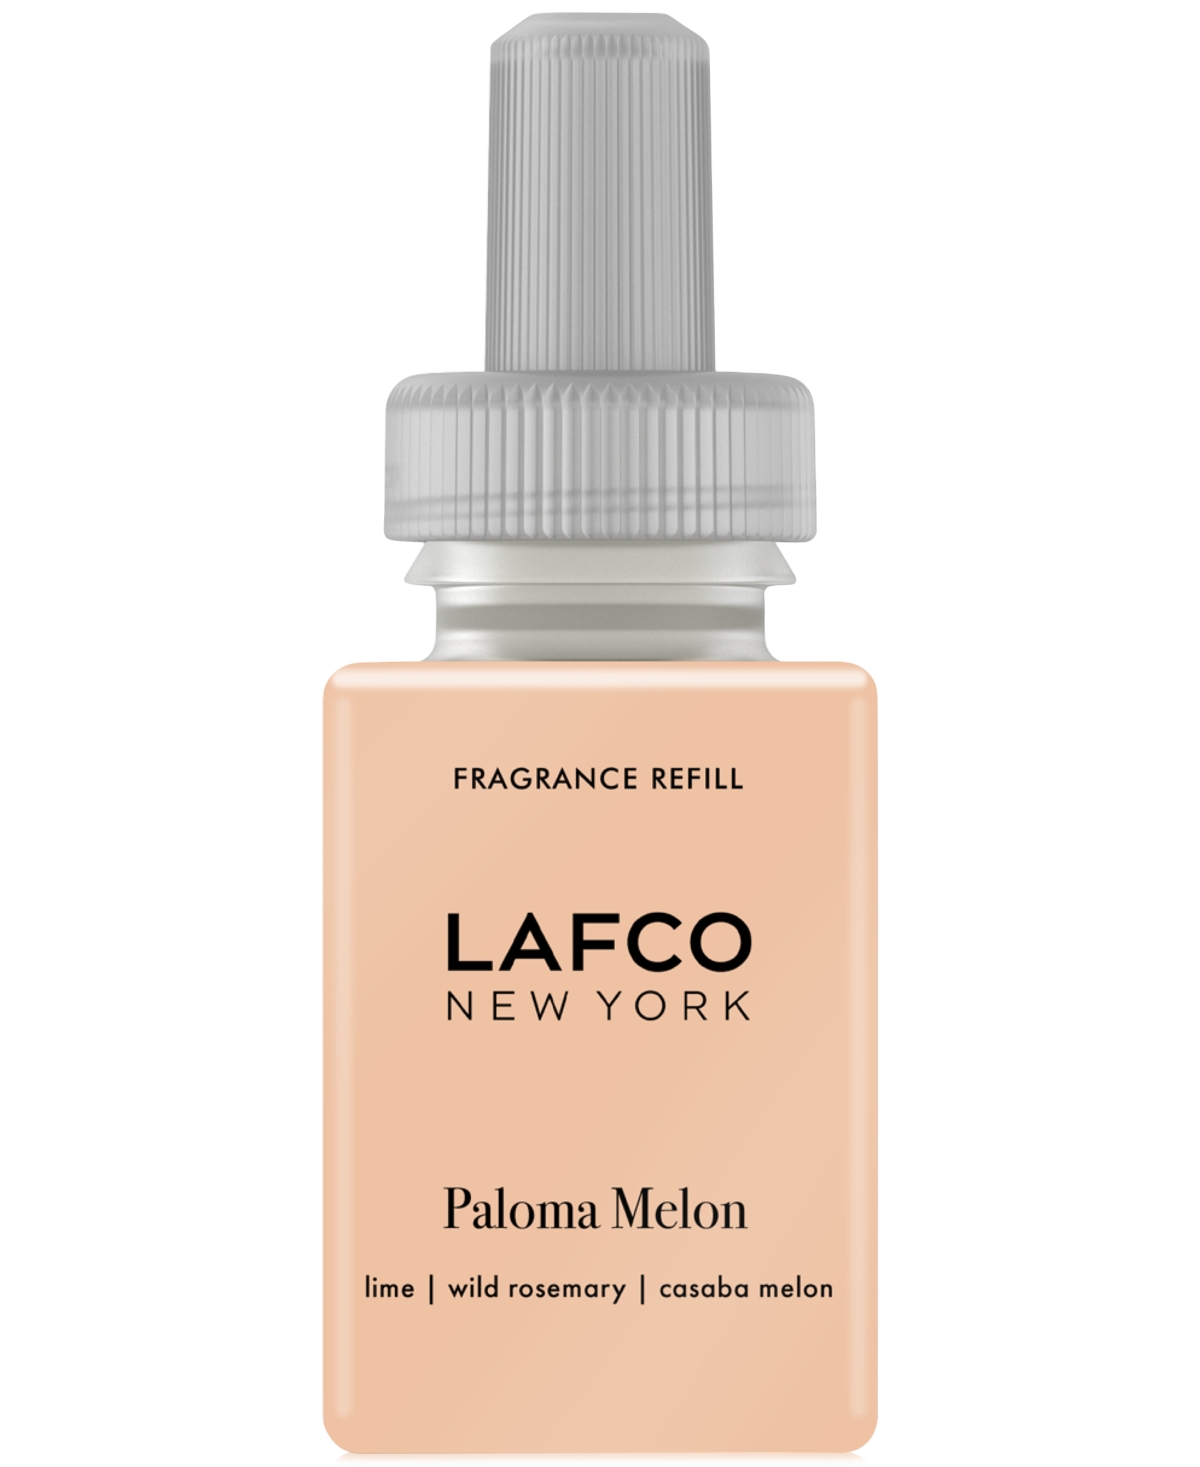 Paloma Melon Pura Smart Diffuser Fragrance Refill, 0.33 oz.